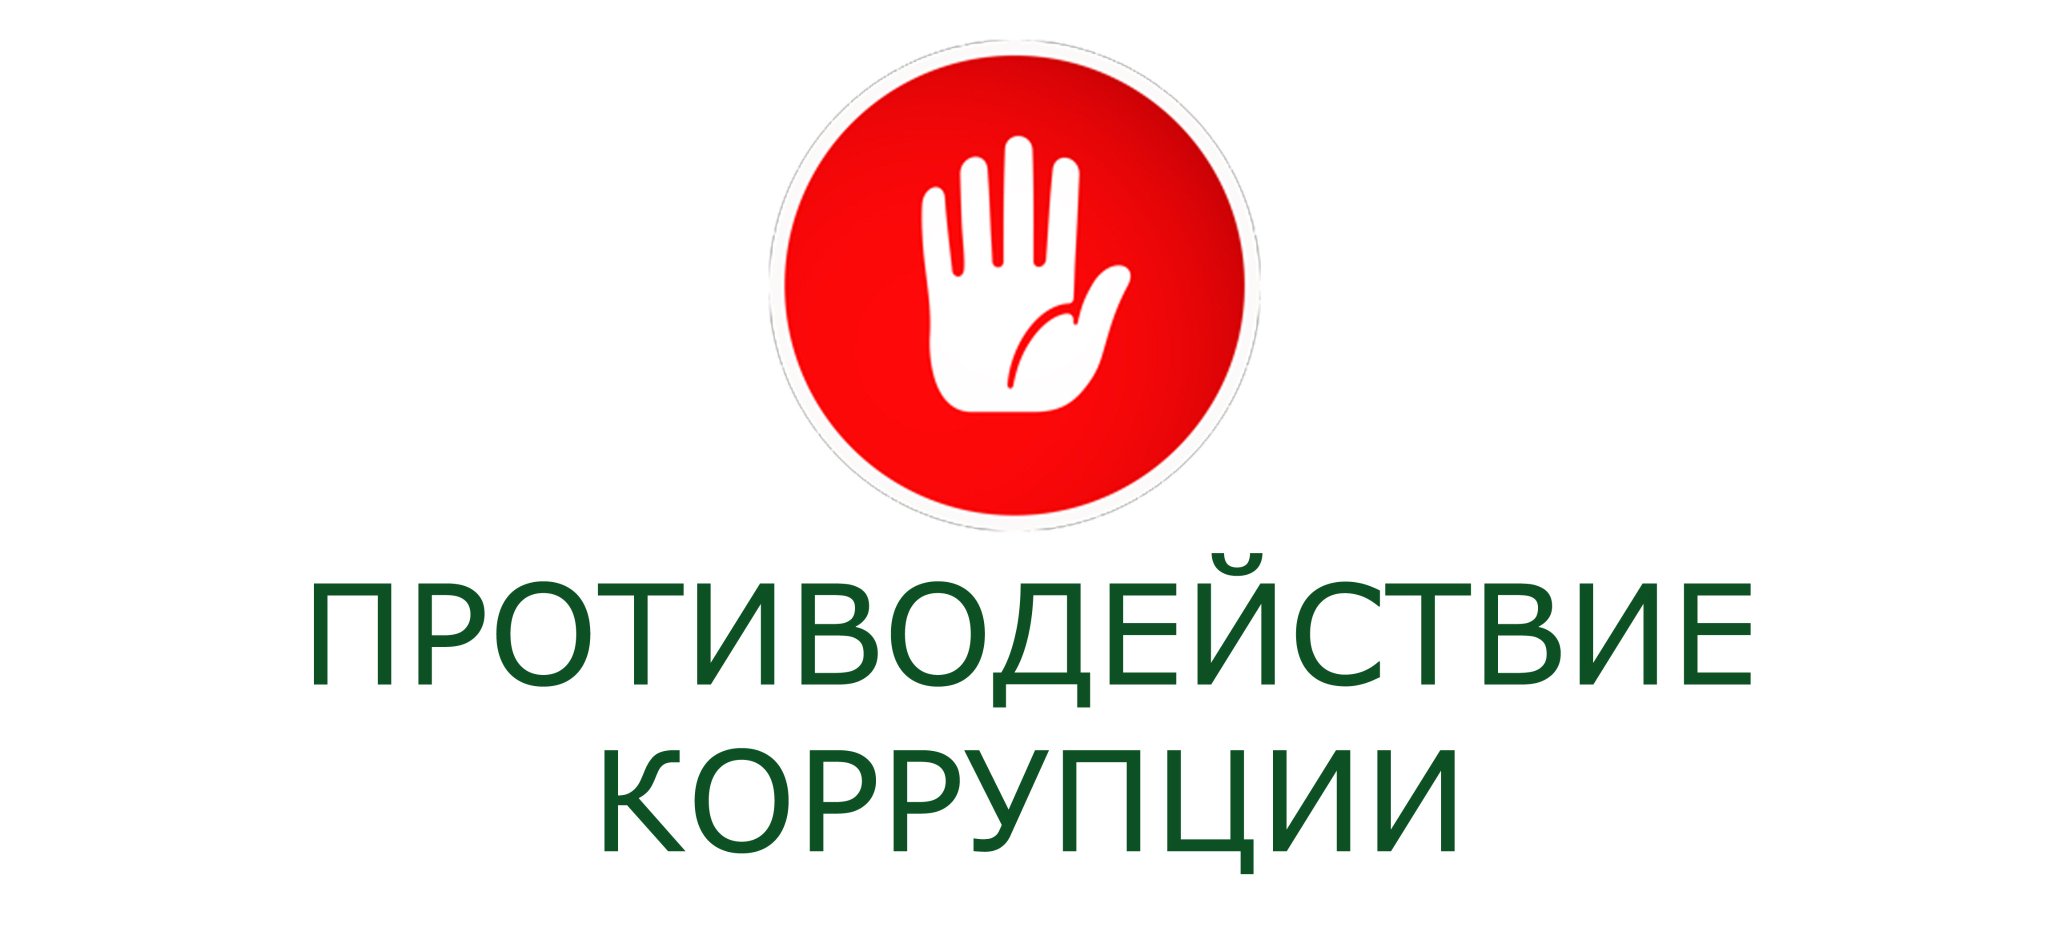 Состоялось  заседание  комиссии  по координации  работы  по  противодействию  коррупции  в  Калужской  области.